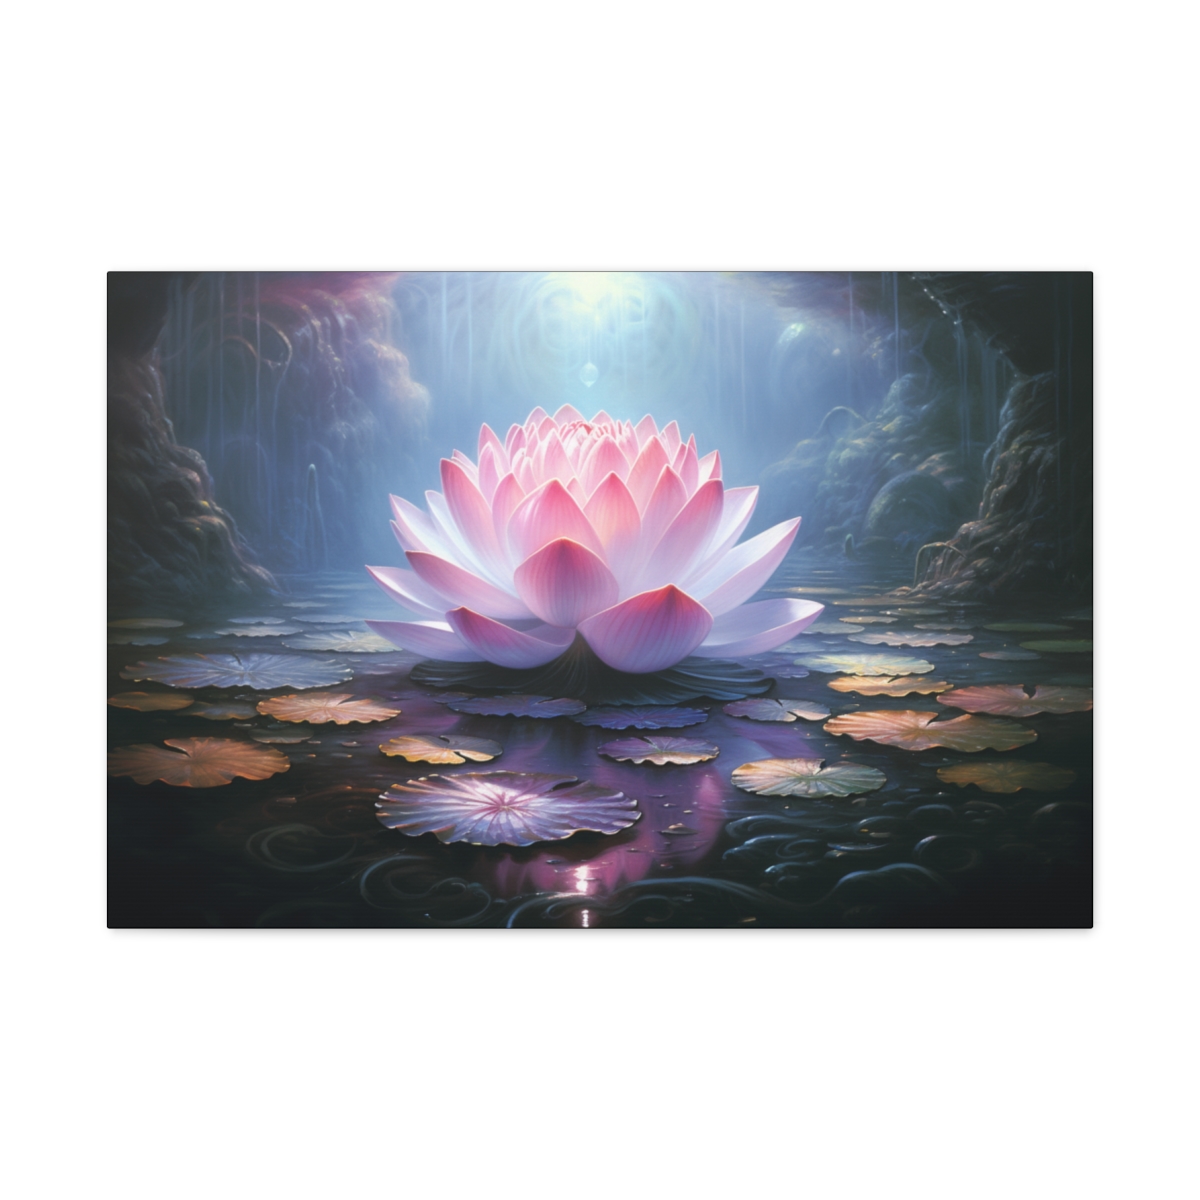 Lotus Art Print: Awakening